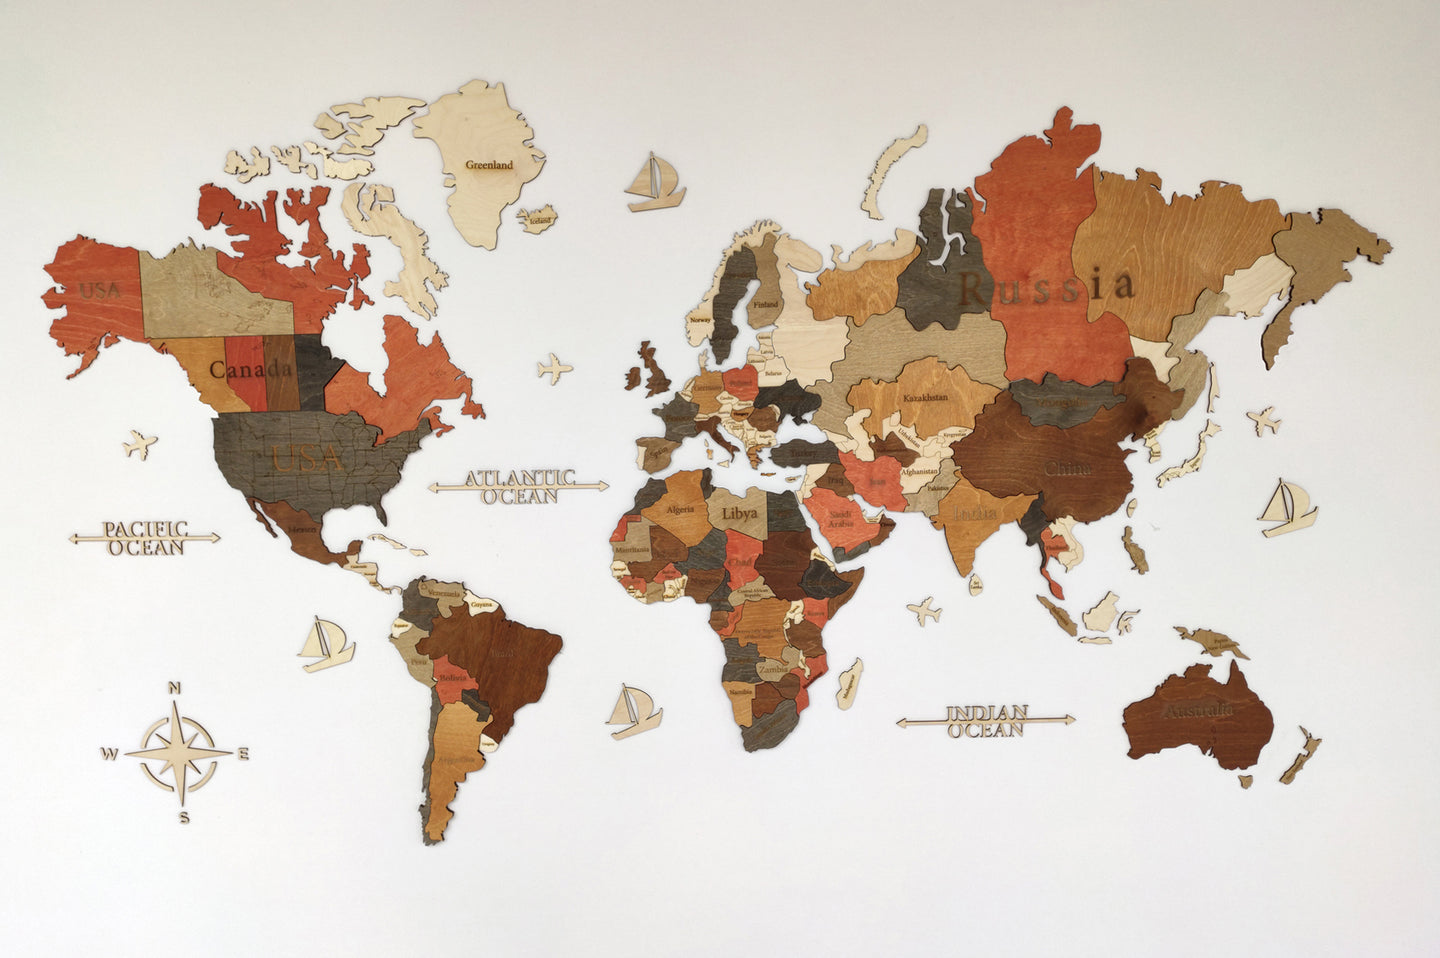 Ξύλινος τρισδιάστατος παγκόσμιος χάρτης τοίχου - (190 x 110) / Με αγγλικά ονόματα